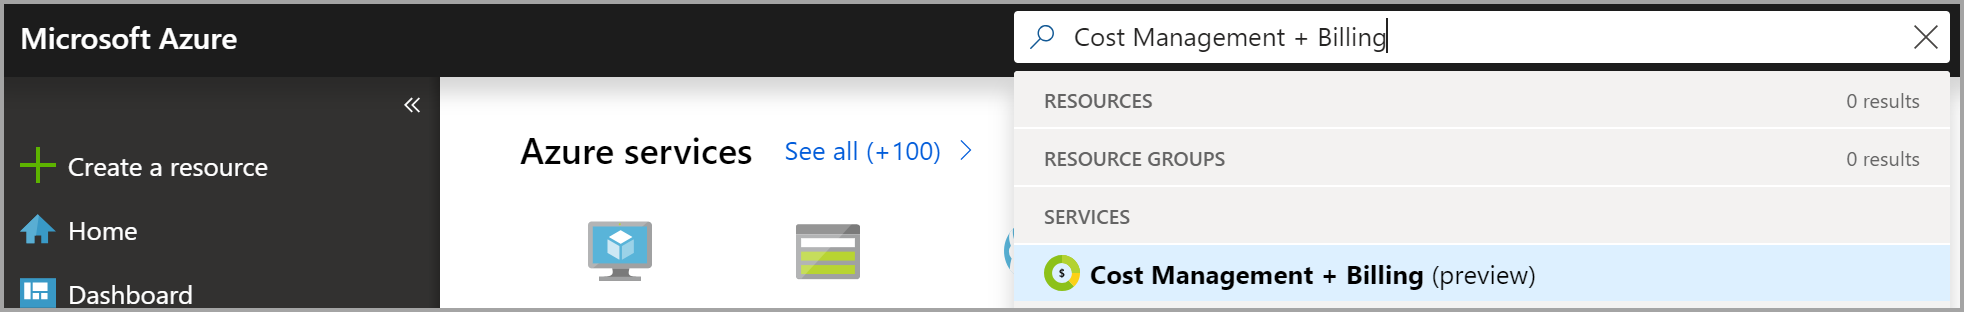 显示在 Azure 门户中搜索“成本管理 + 计费”来请求计费所有权的屏幕截图。